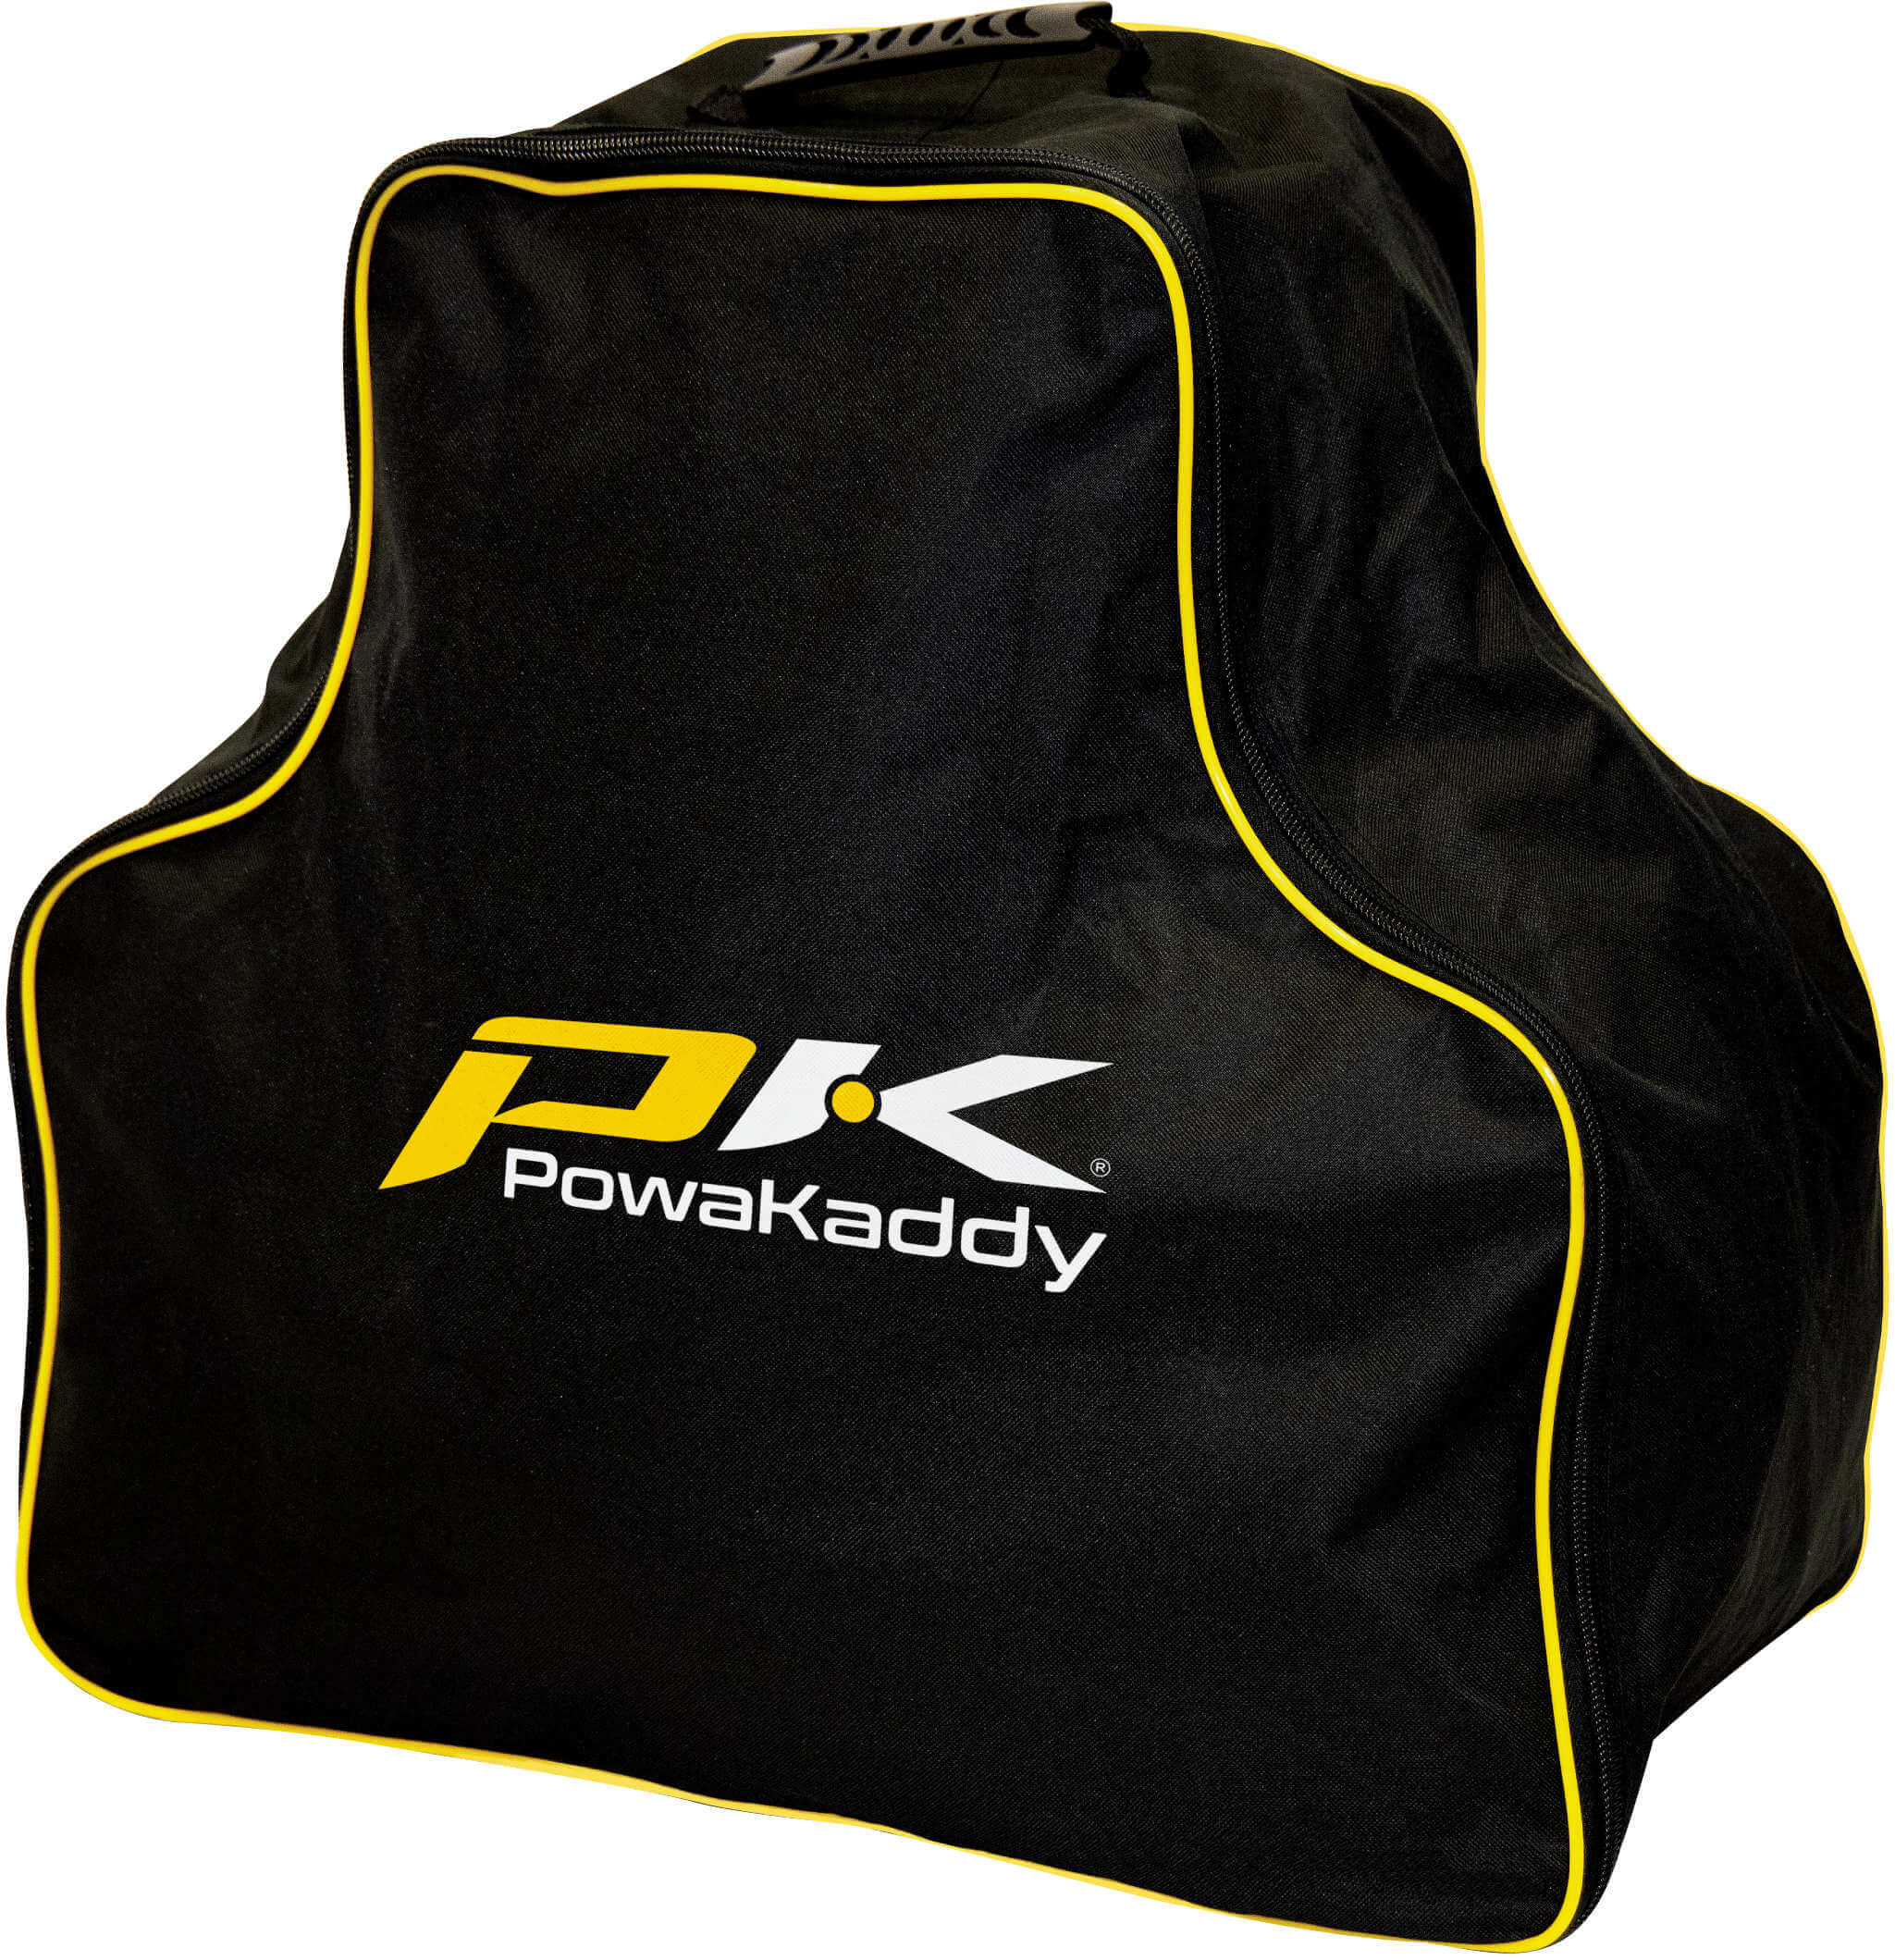 Powakaddy Transporttasche für C2 oder CT6 Serie